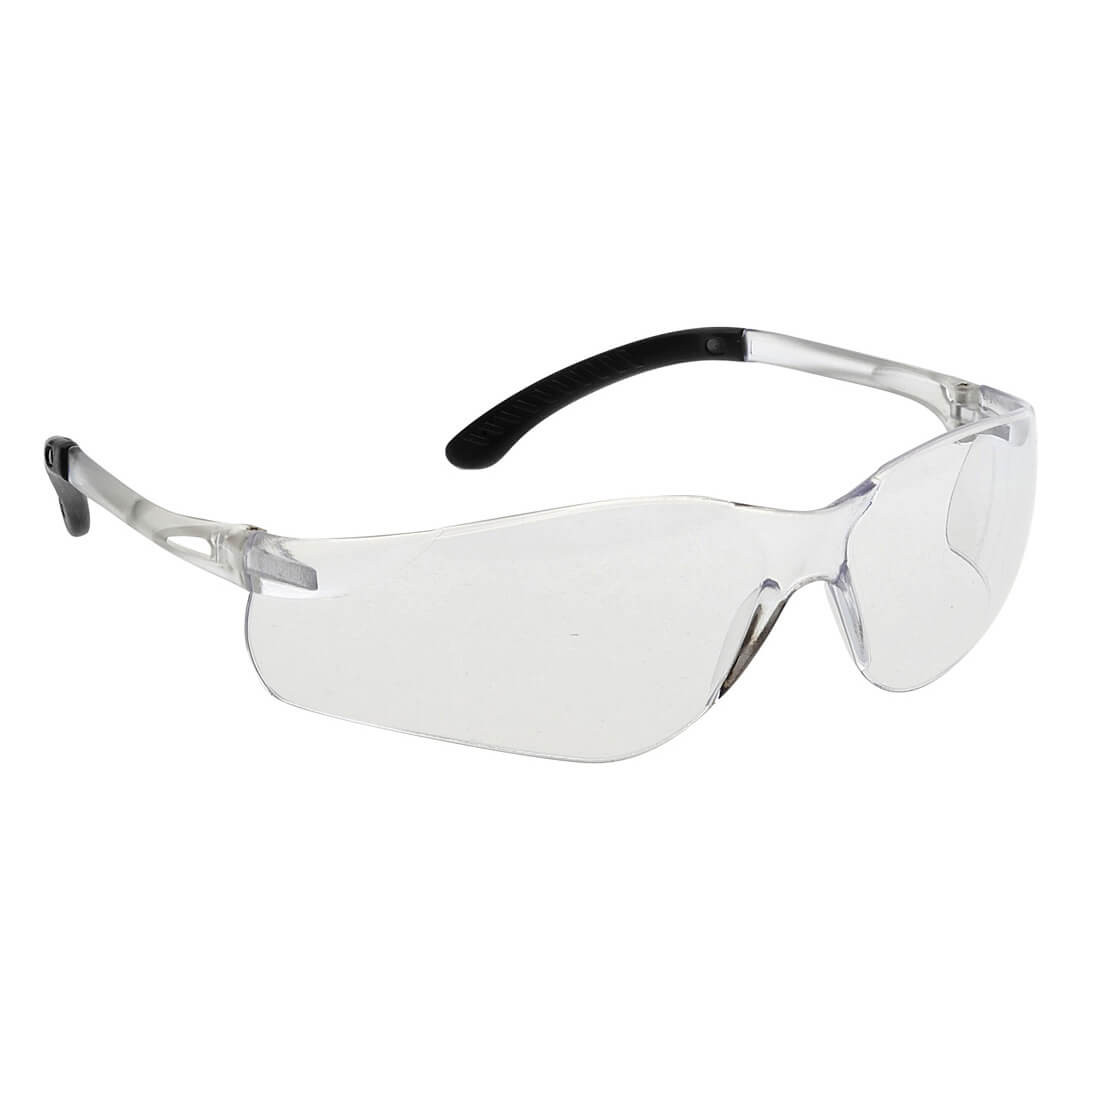 Gafas Pan View - Equipamientos de protección personal